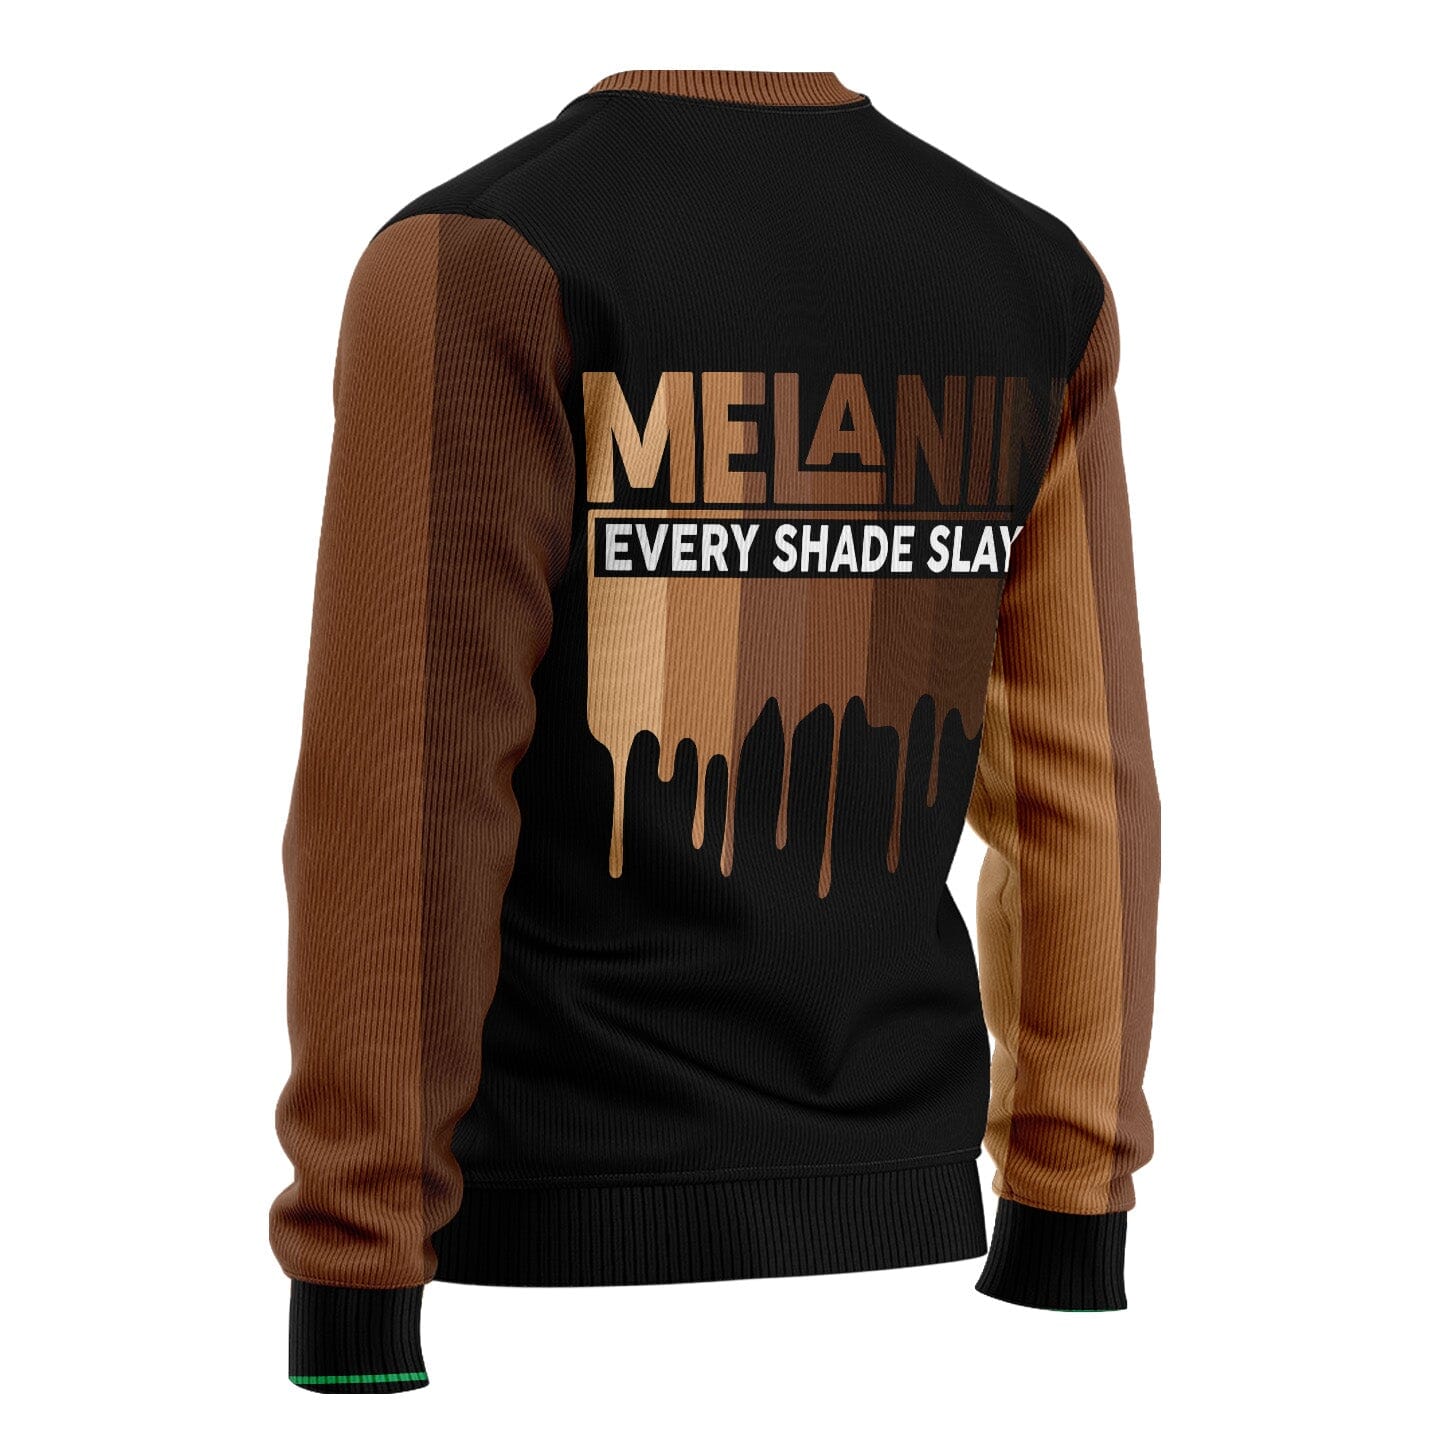 Every Shade Slays Melanin Sweatshirt Sweatshirt Tianci 